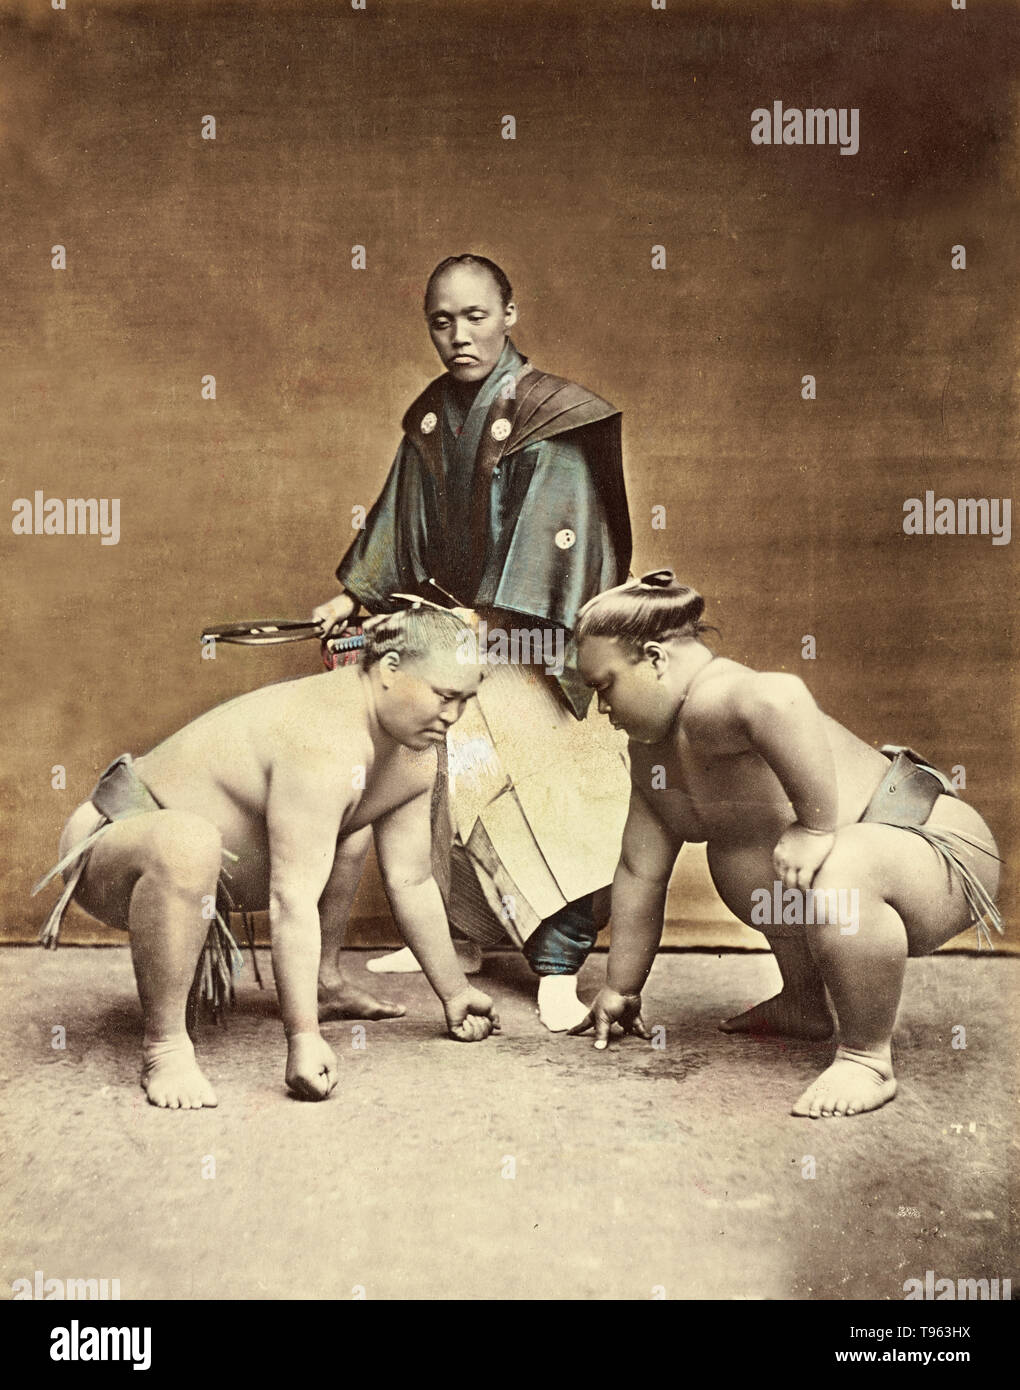 Les lutteurs de sumo. Kusakabe Kimbei (japonais, 1841 - 1934). Prises c. Années 1870 - années 1890. À la main, à l'albumine argentique. Le sumo professionnel racines remontent aux années 1600 au Japon. Les lutteurs d'origine étaient probablement des samouraïs sans maîtres, qui avaient besoin de trouver une autre forme de revenu. Tournois de sumo professionnel actuel a commencé à la Tomioka Hachiman Shrine en 1684. Banque D'Images